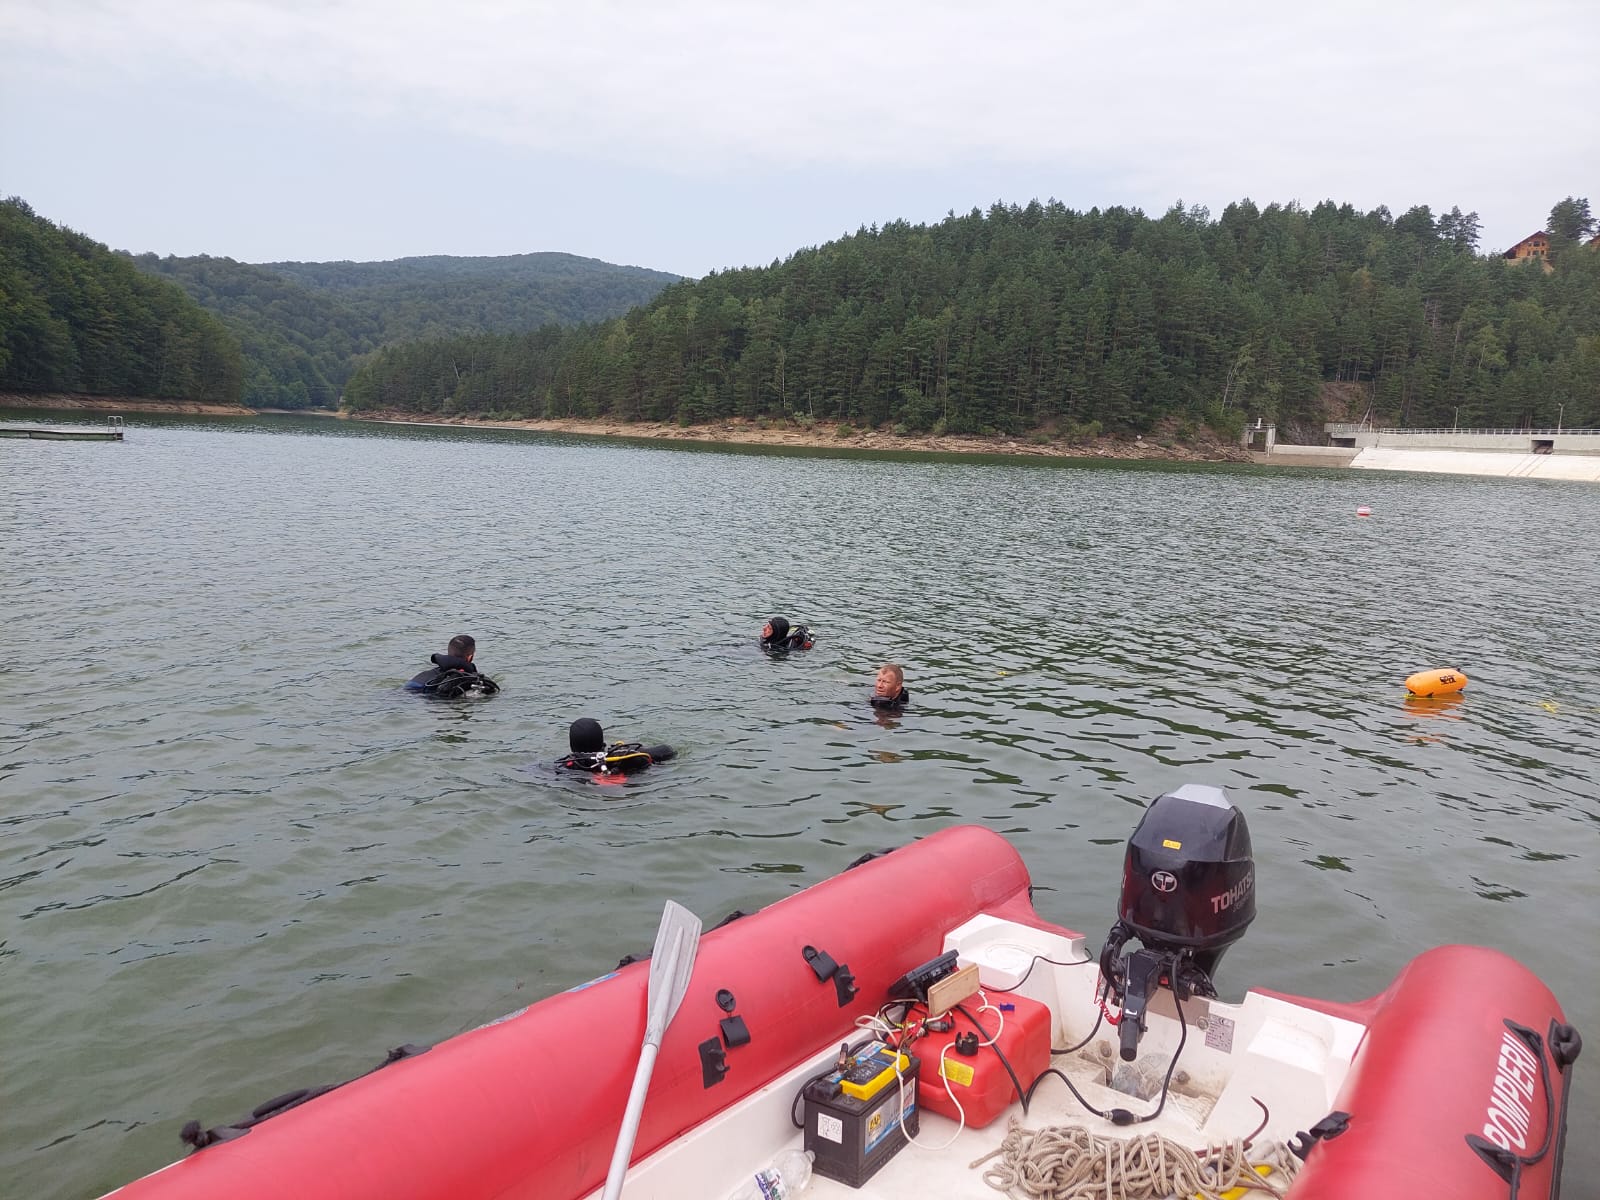 Pompierii militari și scafandrii au continuat căutare medicului disparut în lacul Gozna din Văliug